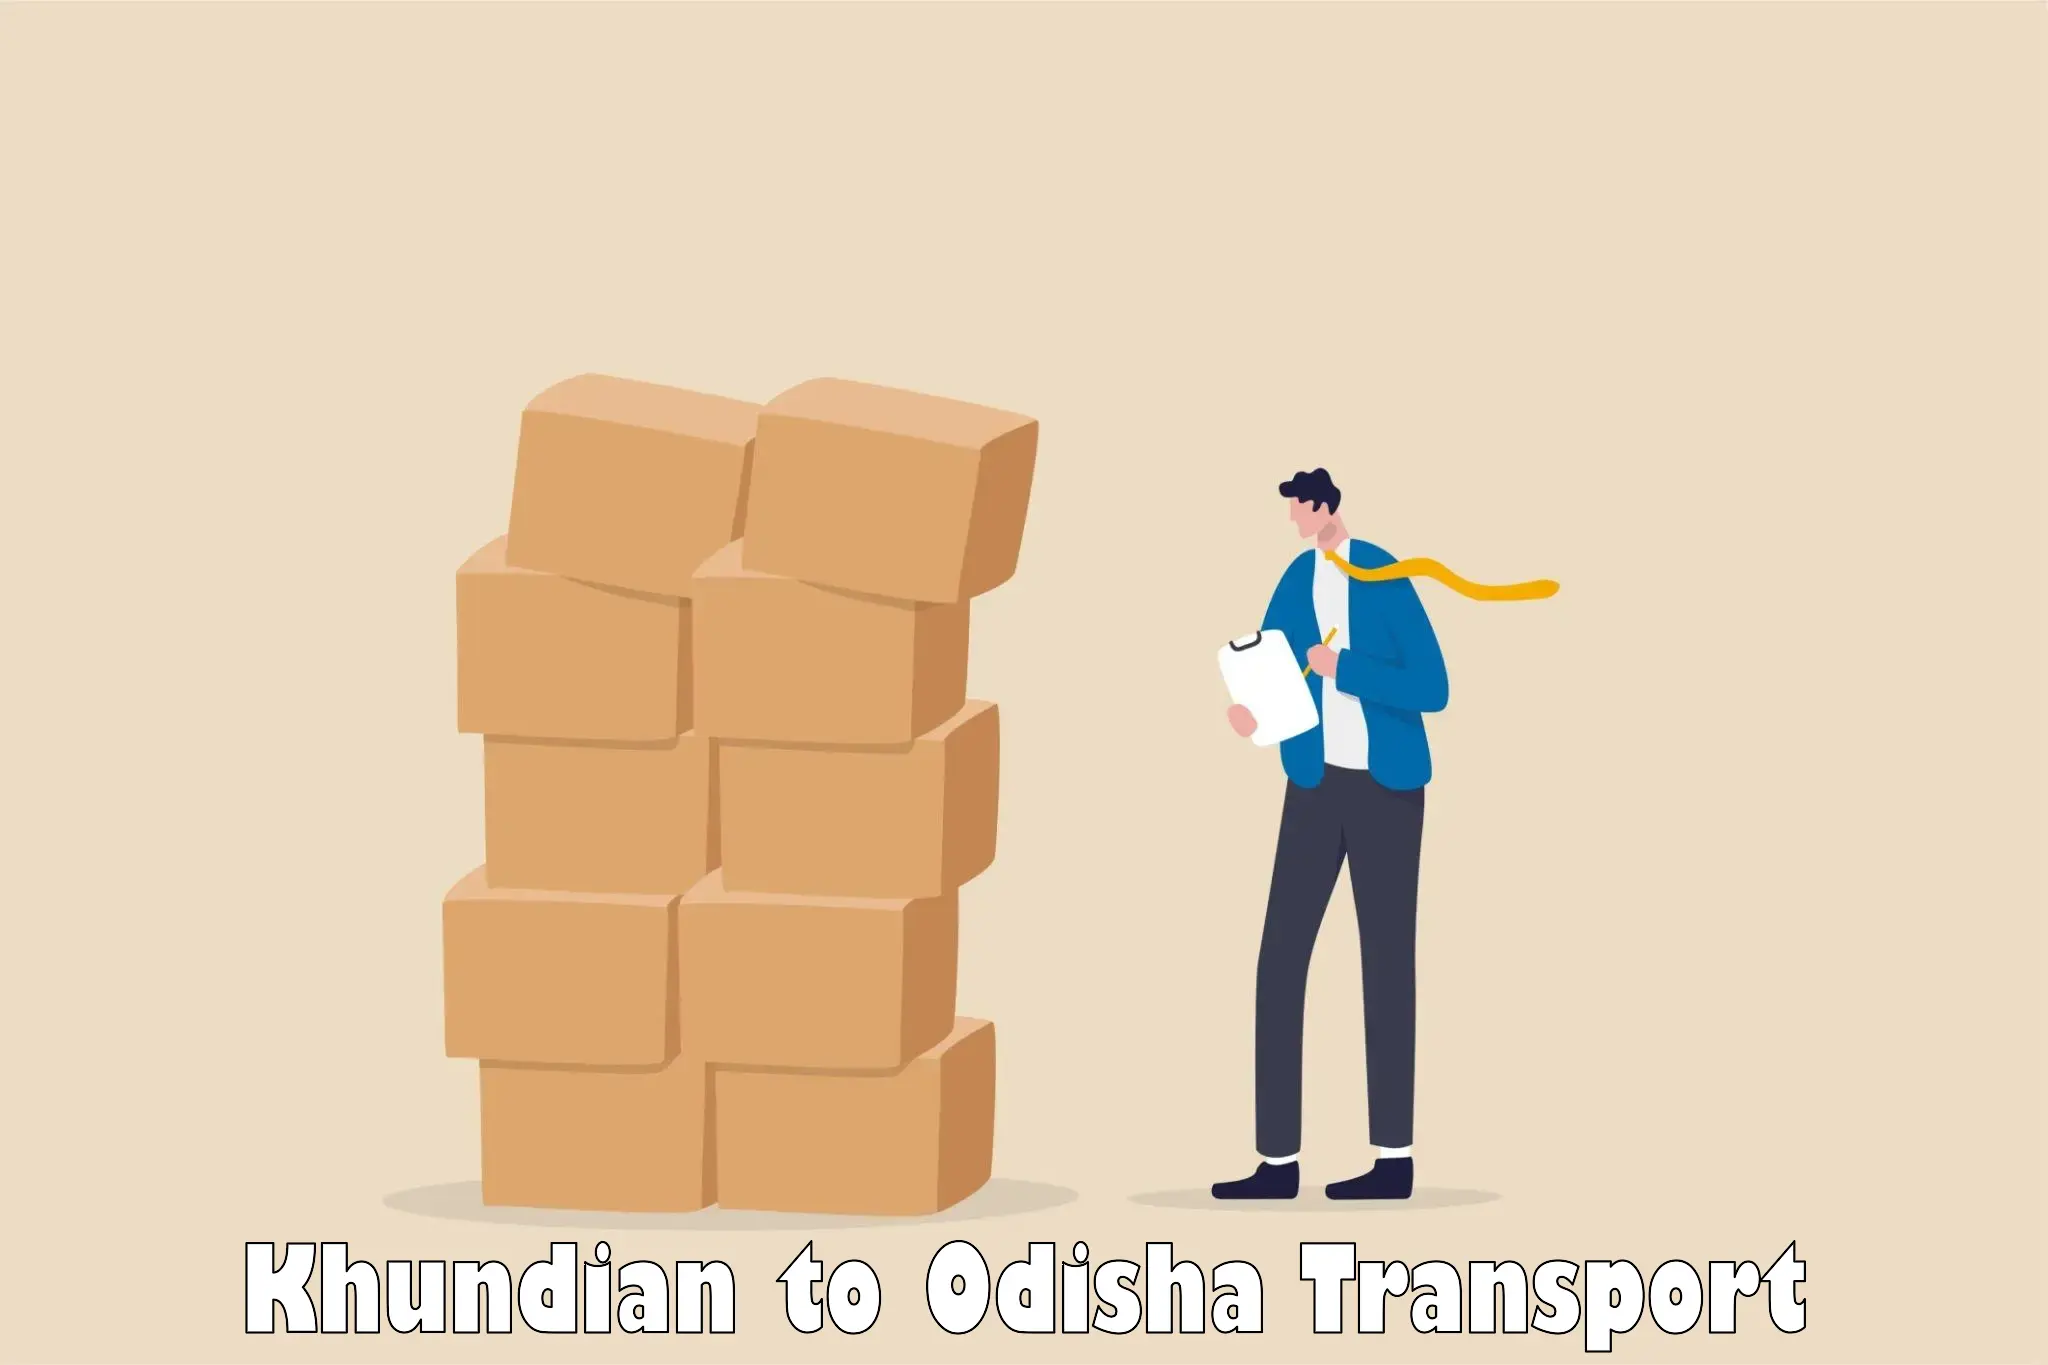 Online transport booking Khundian to Bhuban